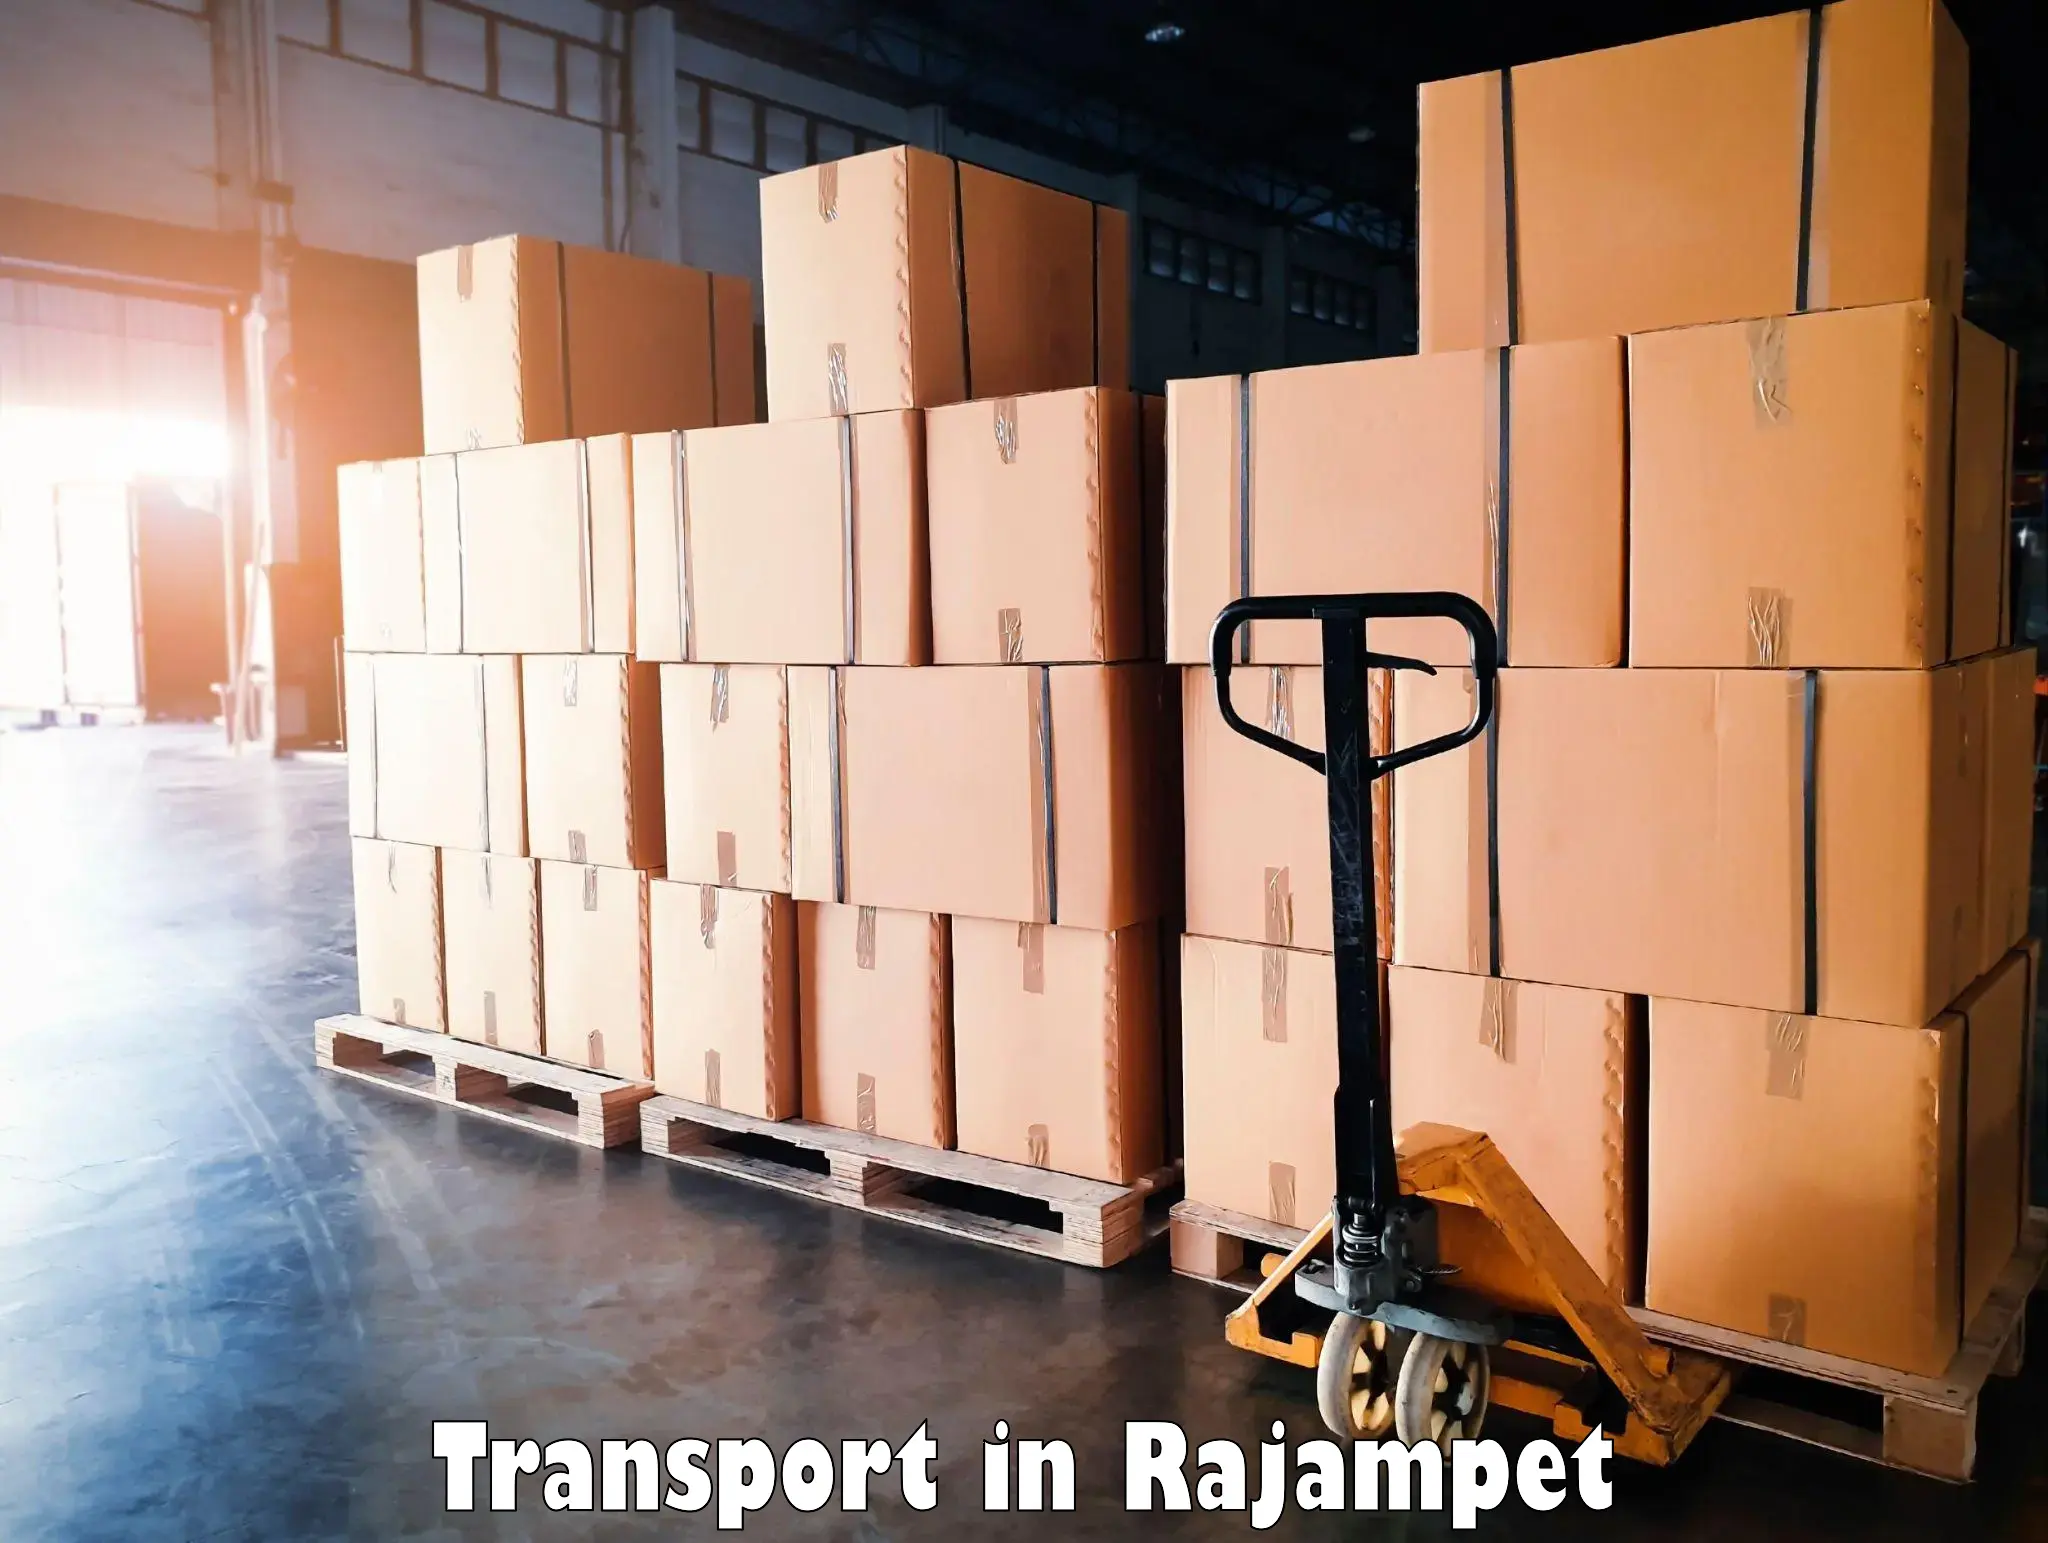 Transport shared services in Rajampet